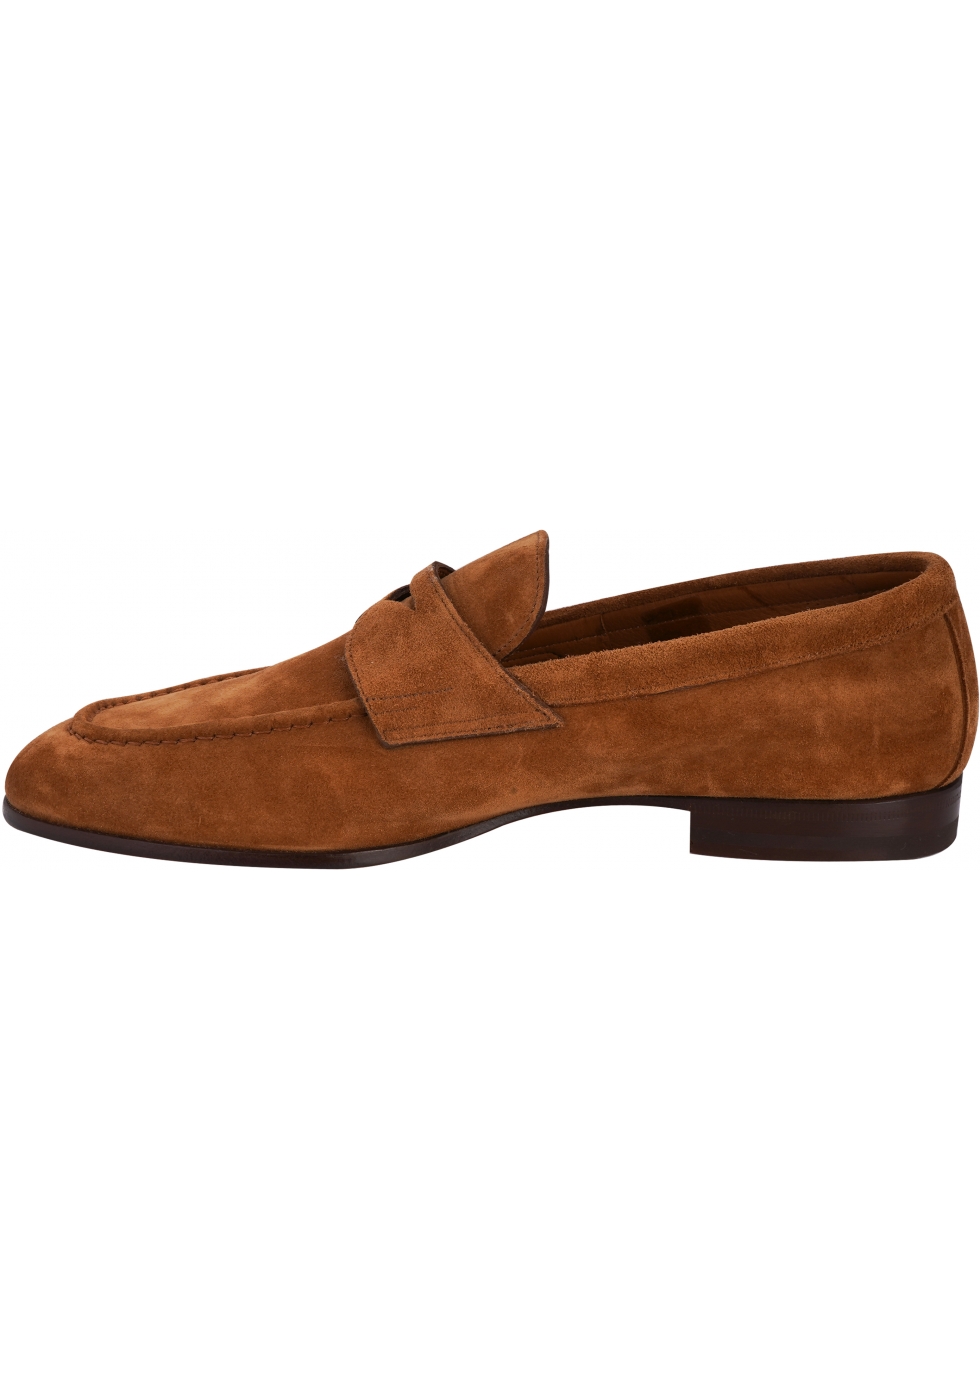 Santoni Men's elegant slip-on loafers shoes in vintage gold suede ...